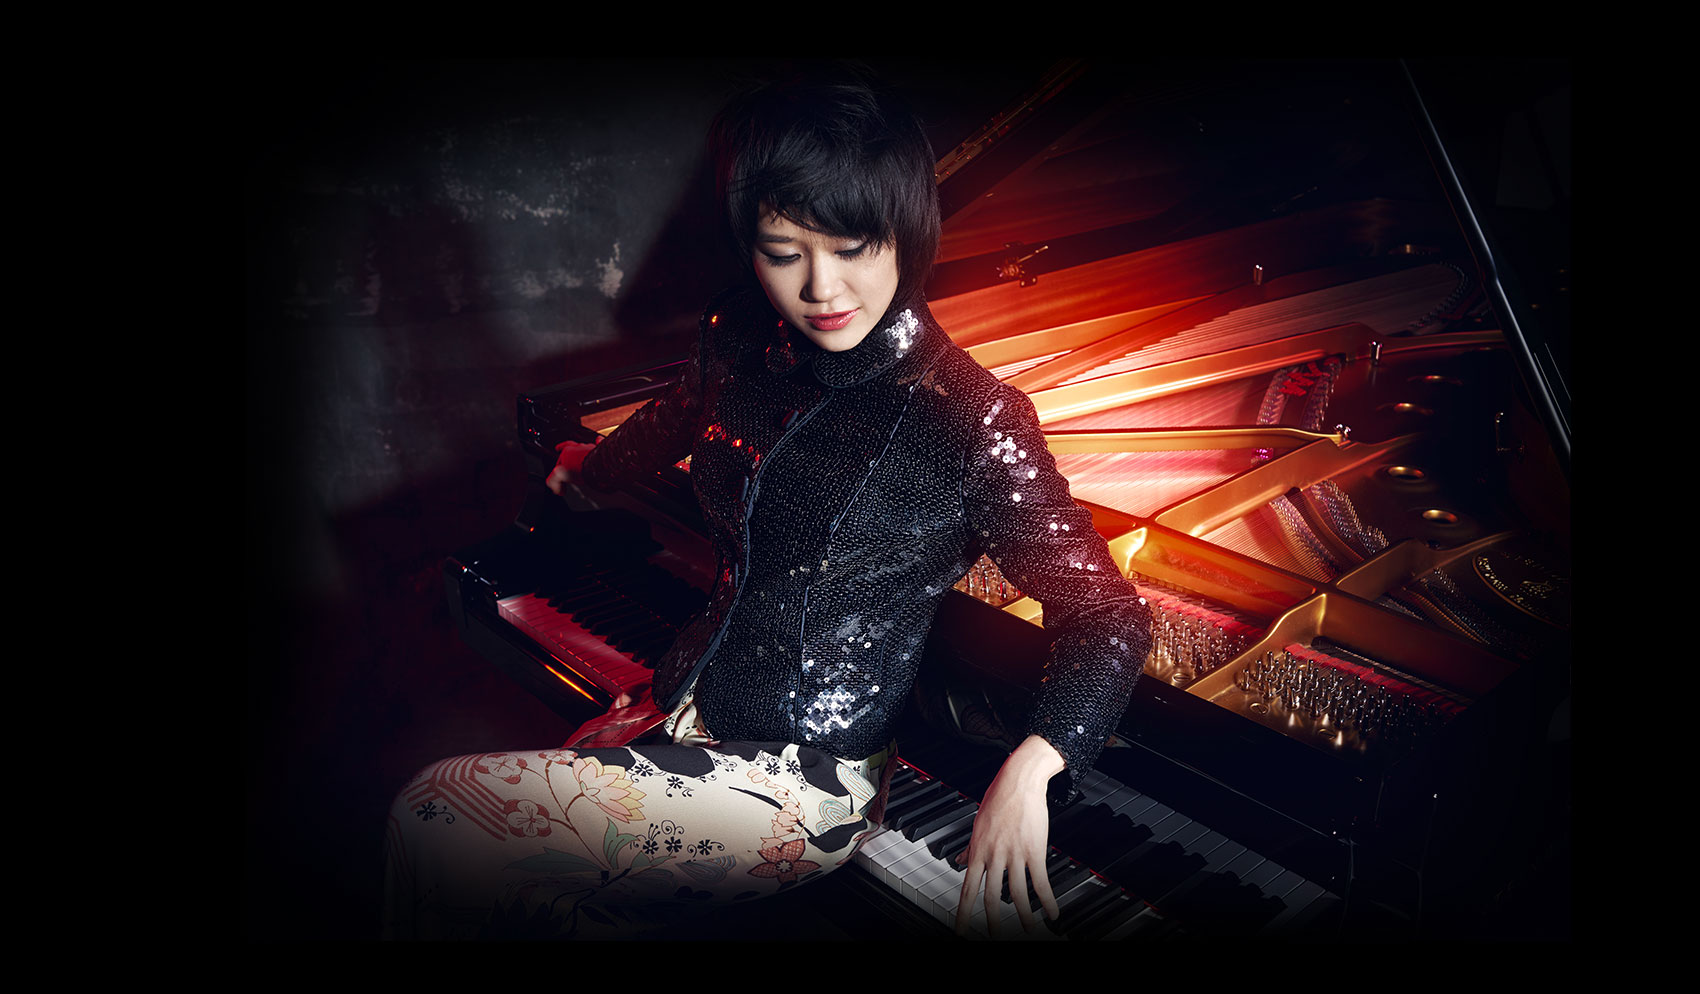 Pianist Yuja Wang